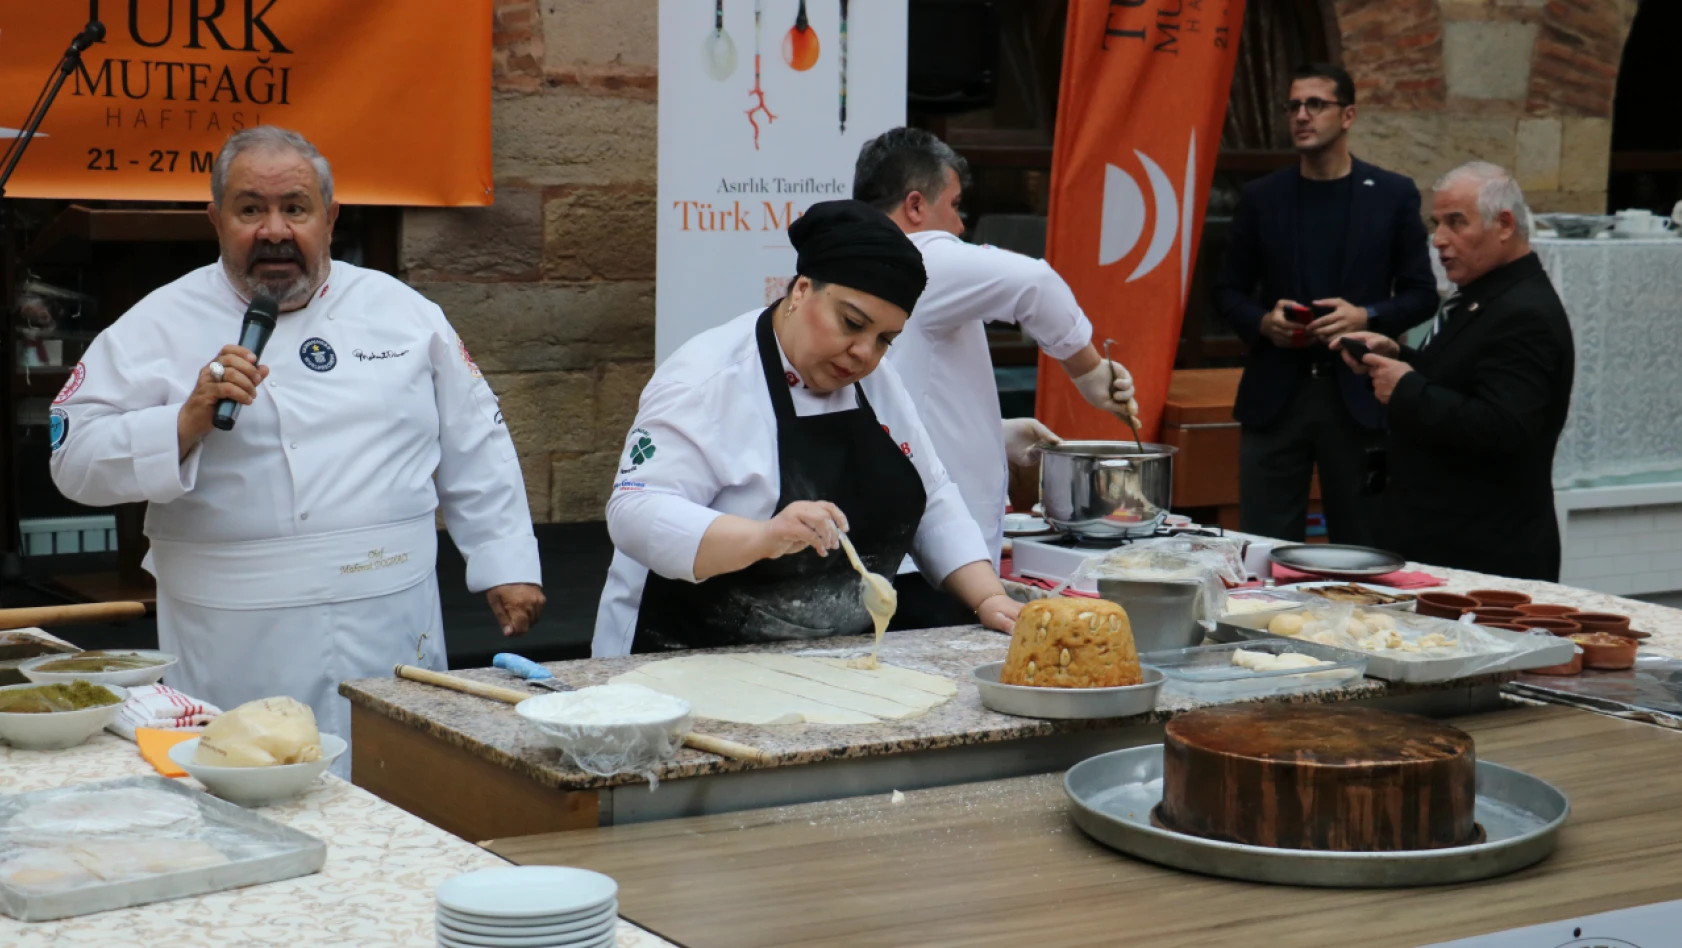 Türk Mutfağı Haftası'nda mutfak şovu